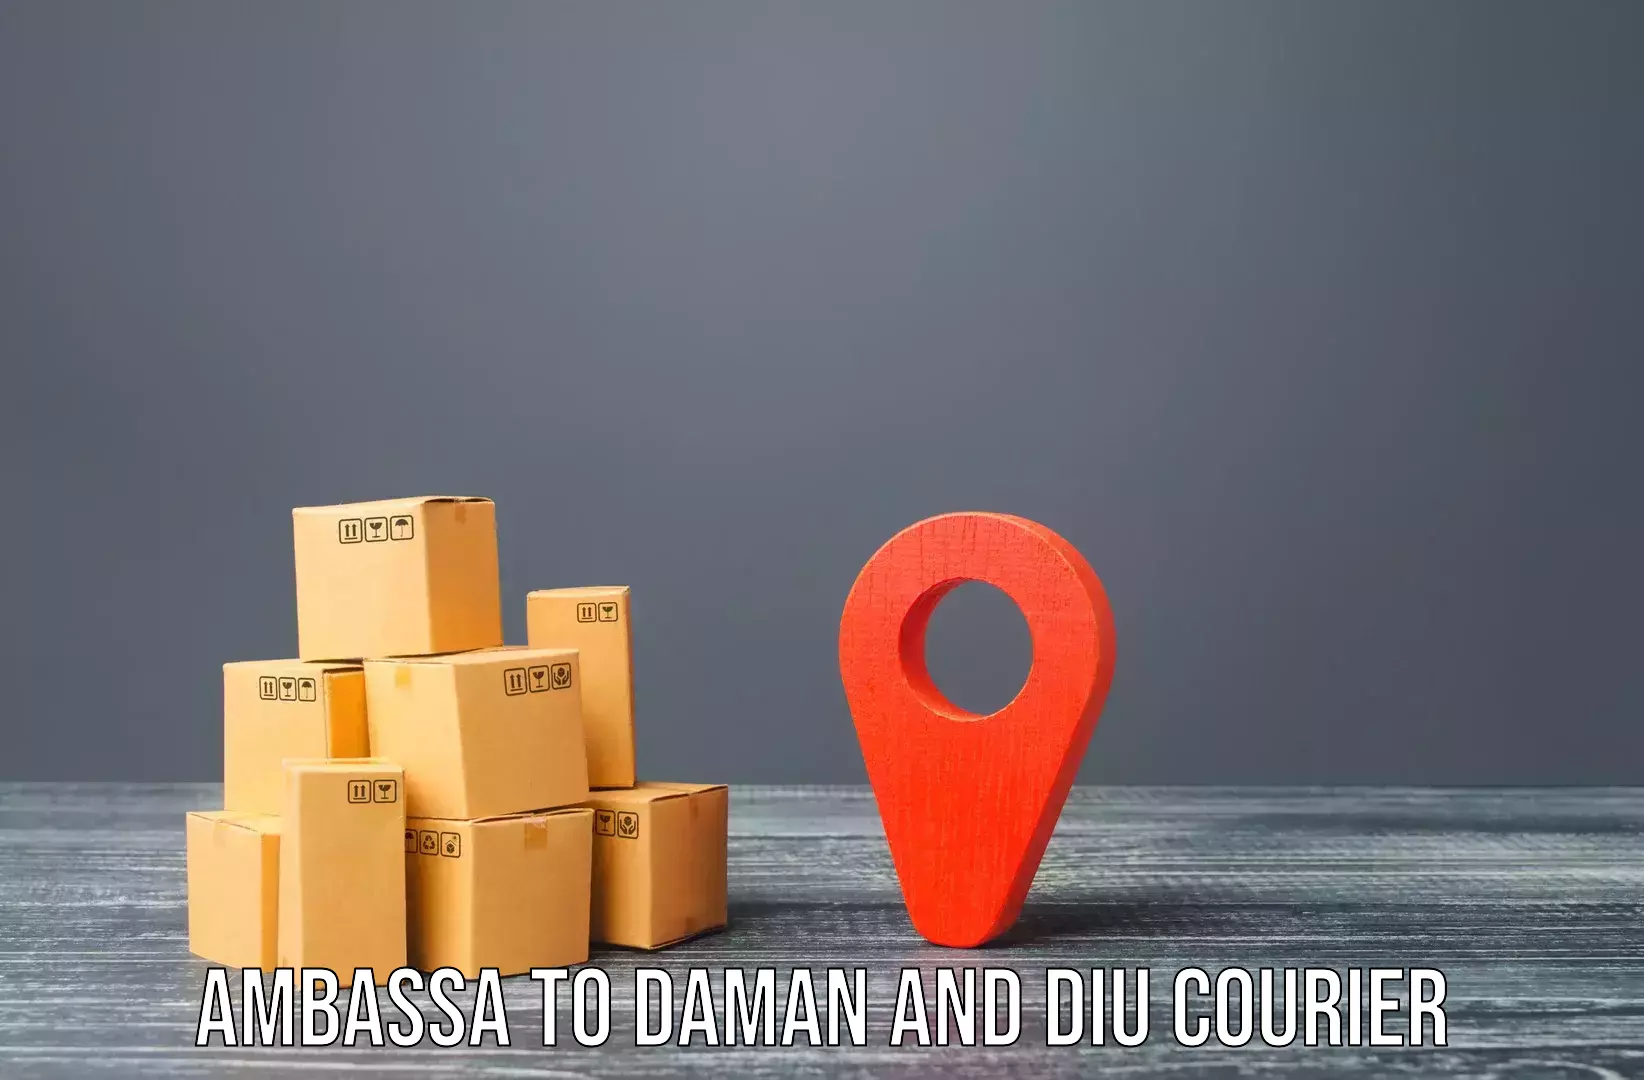 Personalized moving and storage Ambassa to Diu